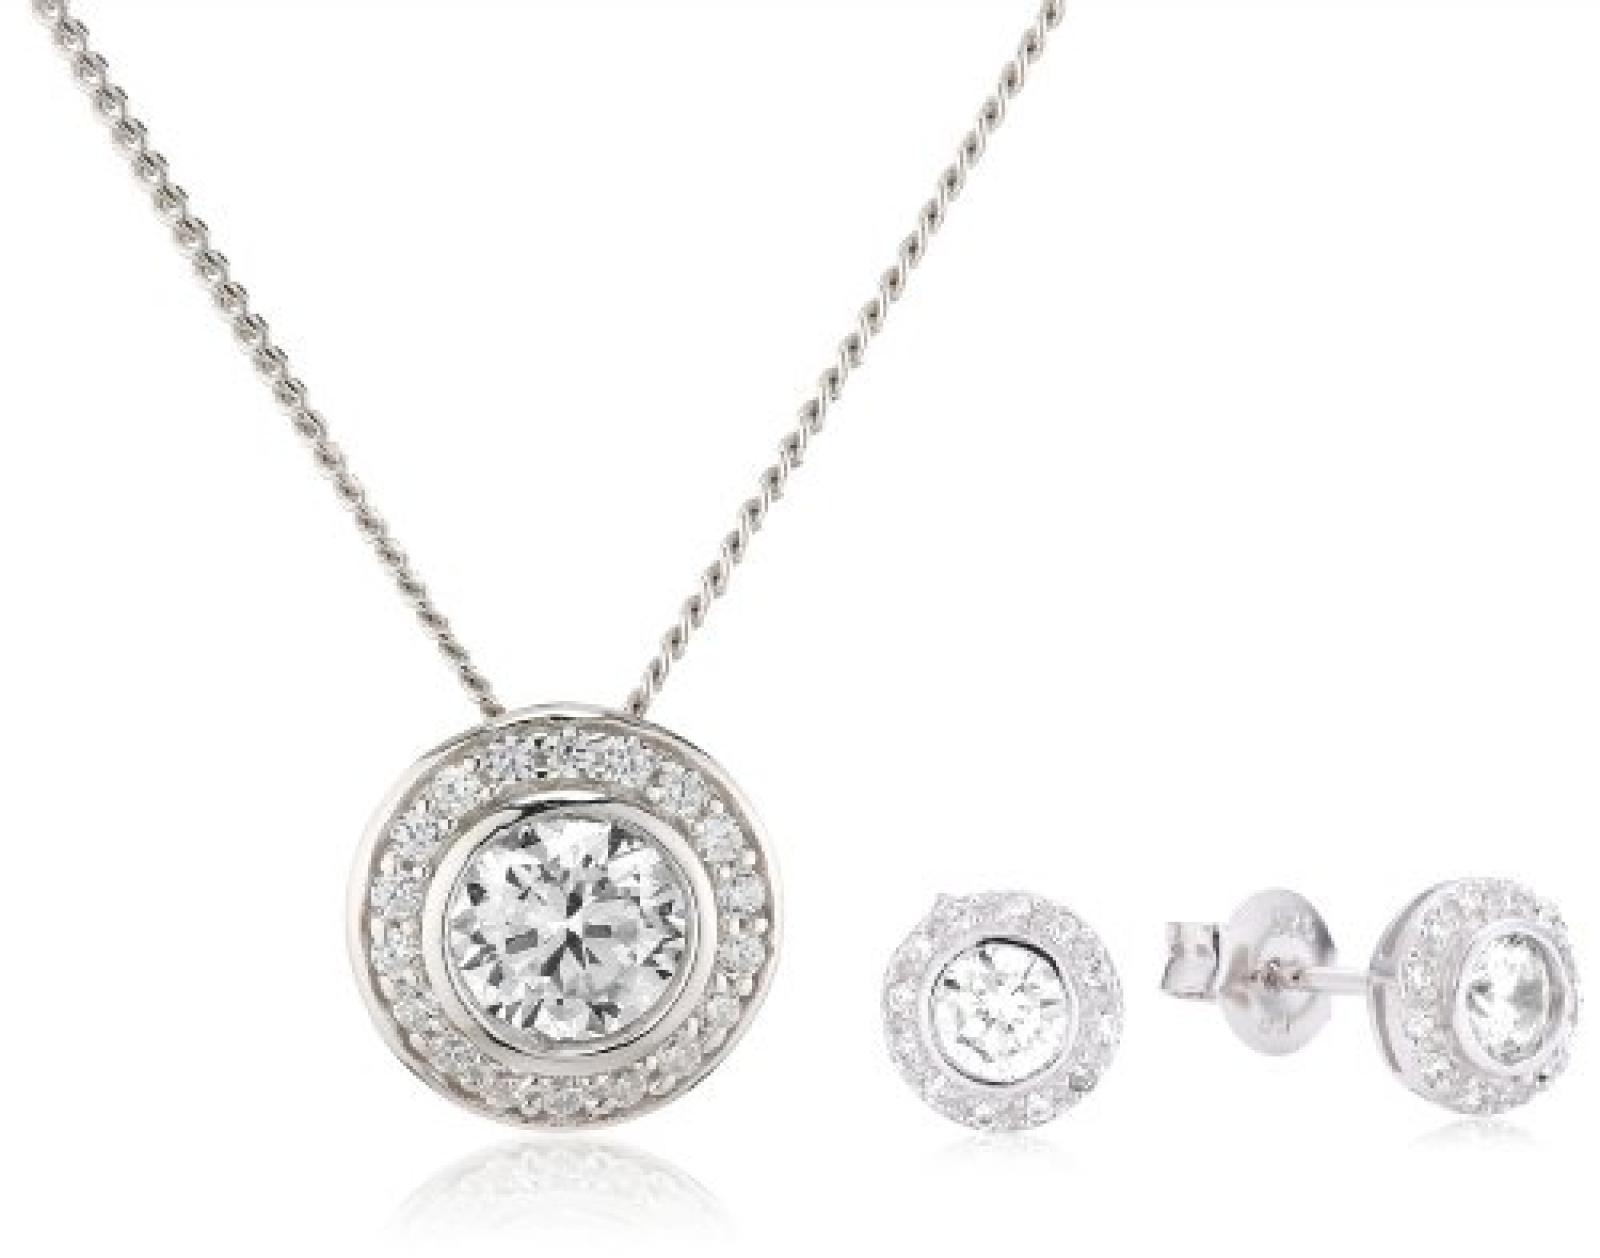 Celesta Damen-Set: Halskette + Ohrringe 925 Sterling Silber rhodiniert Zirkonia Celesta 42 cm weiß 500201436-42 